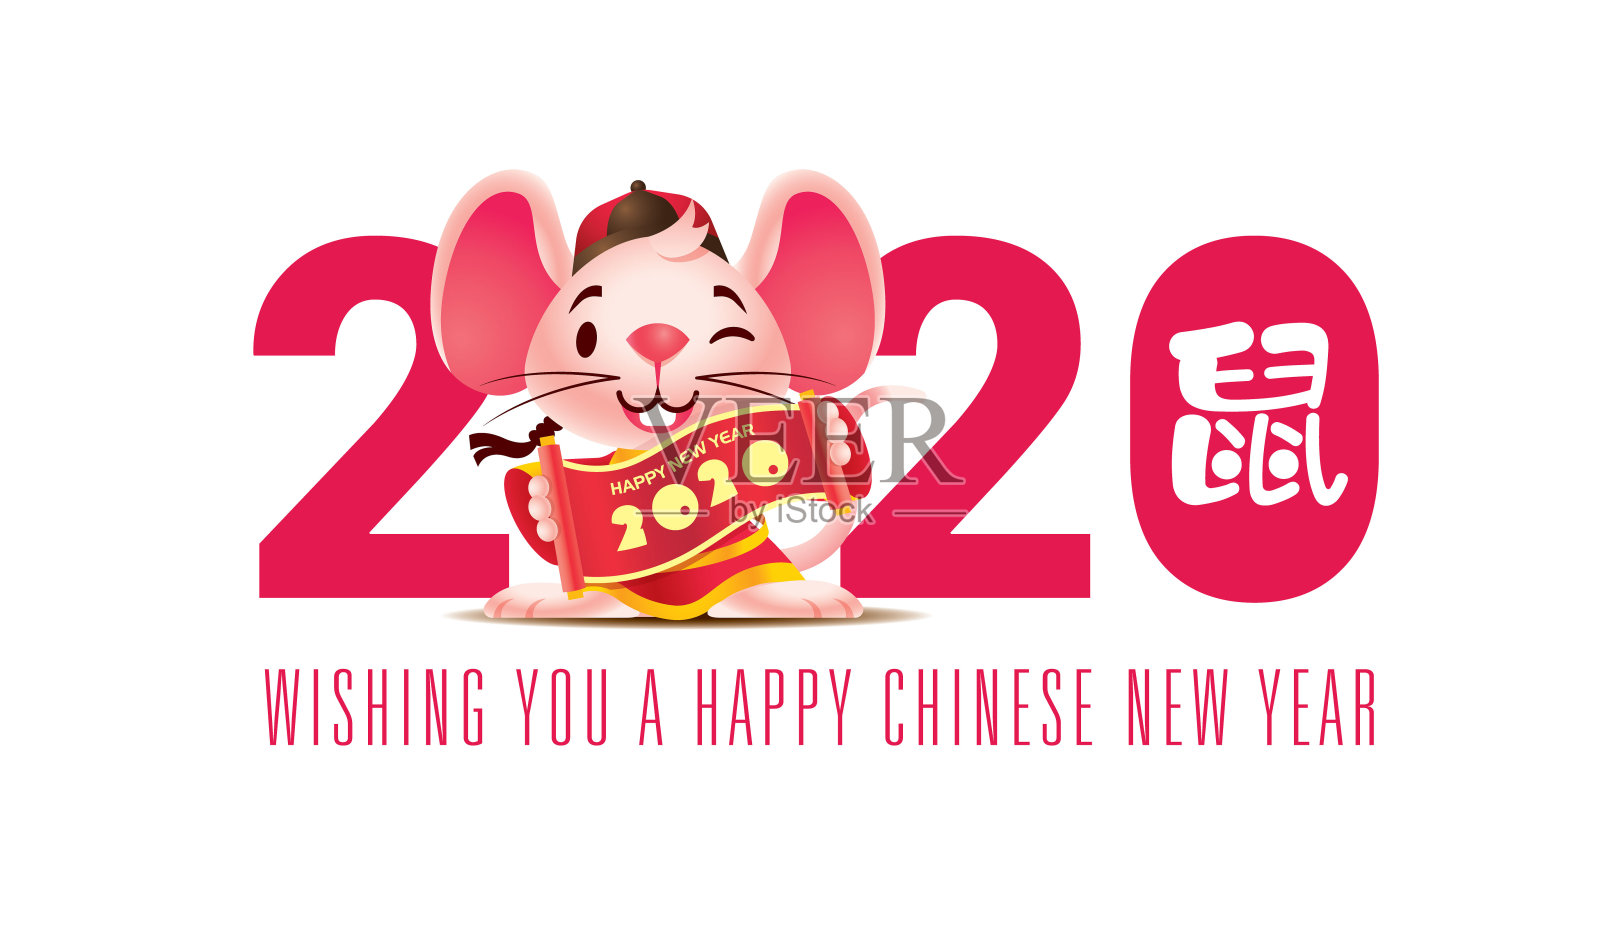 2020年春节快乐。鼠年。卡通可爱的粉红色小老鼠拿着大2020字书法卷轴。插画图片素材